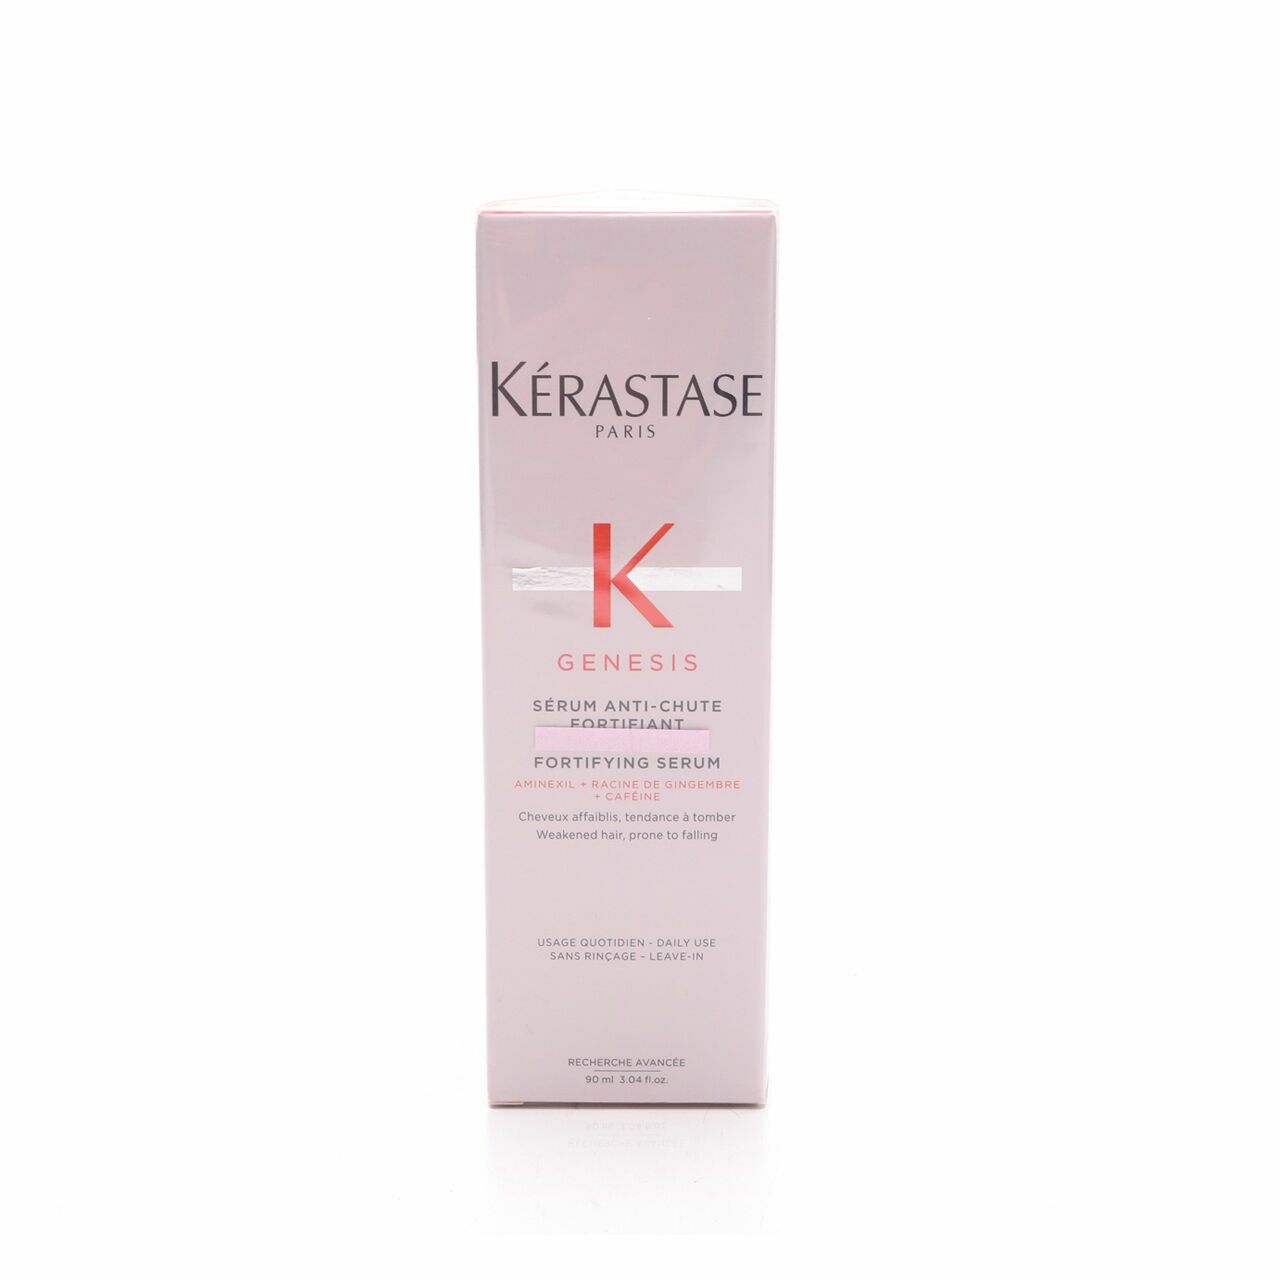 Kerastase Serum Anti-Chute Fortifying Serum Hair Care